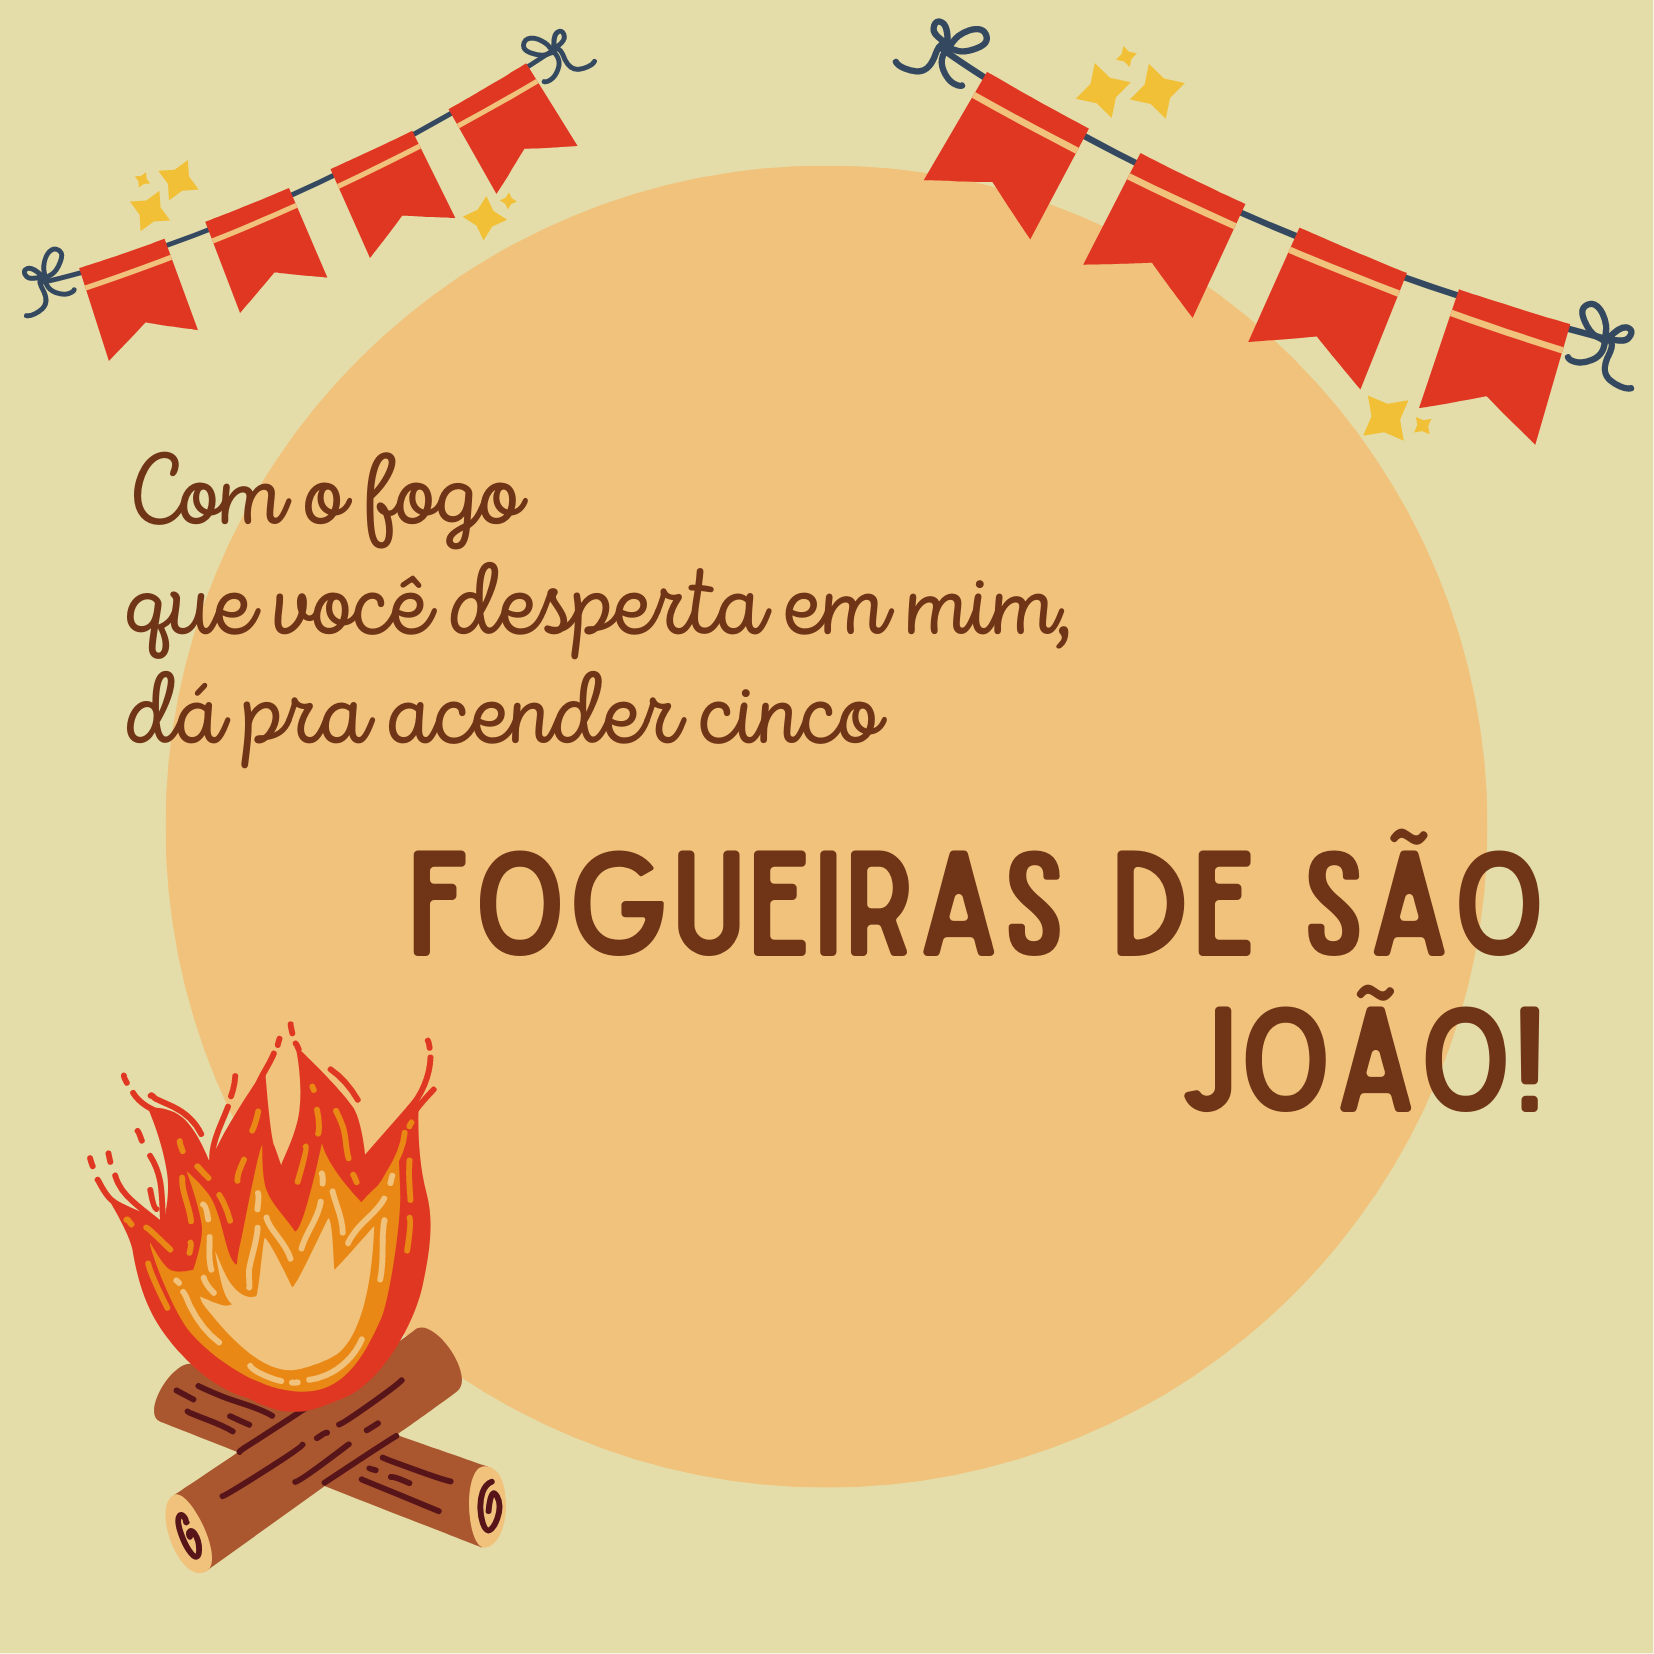 Com o fogo que você desperta em mim, dá pra acender cinco fogueiras de São João!